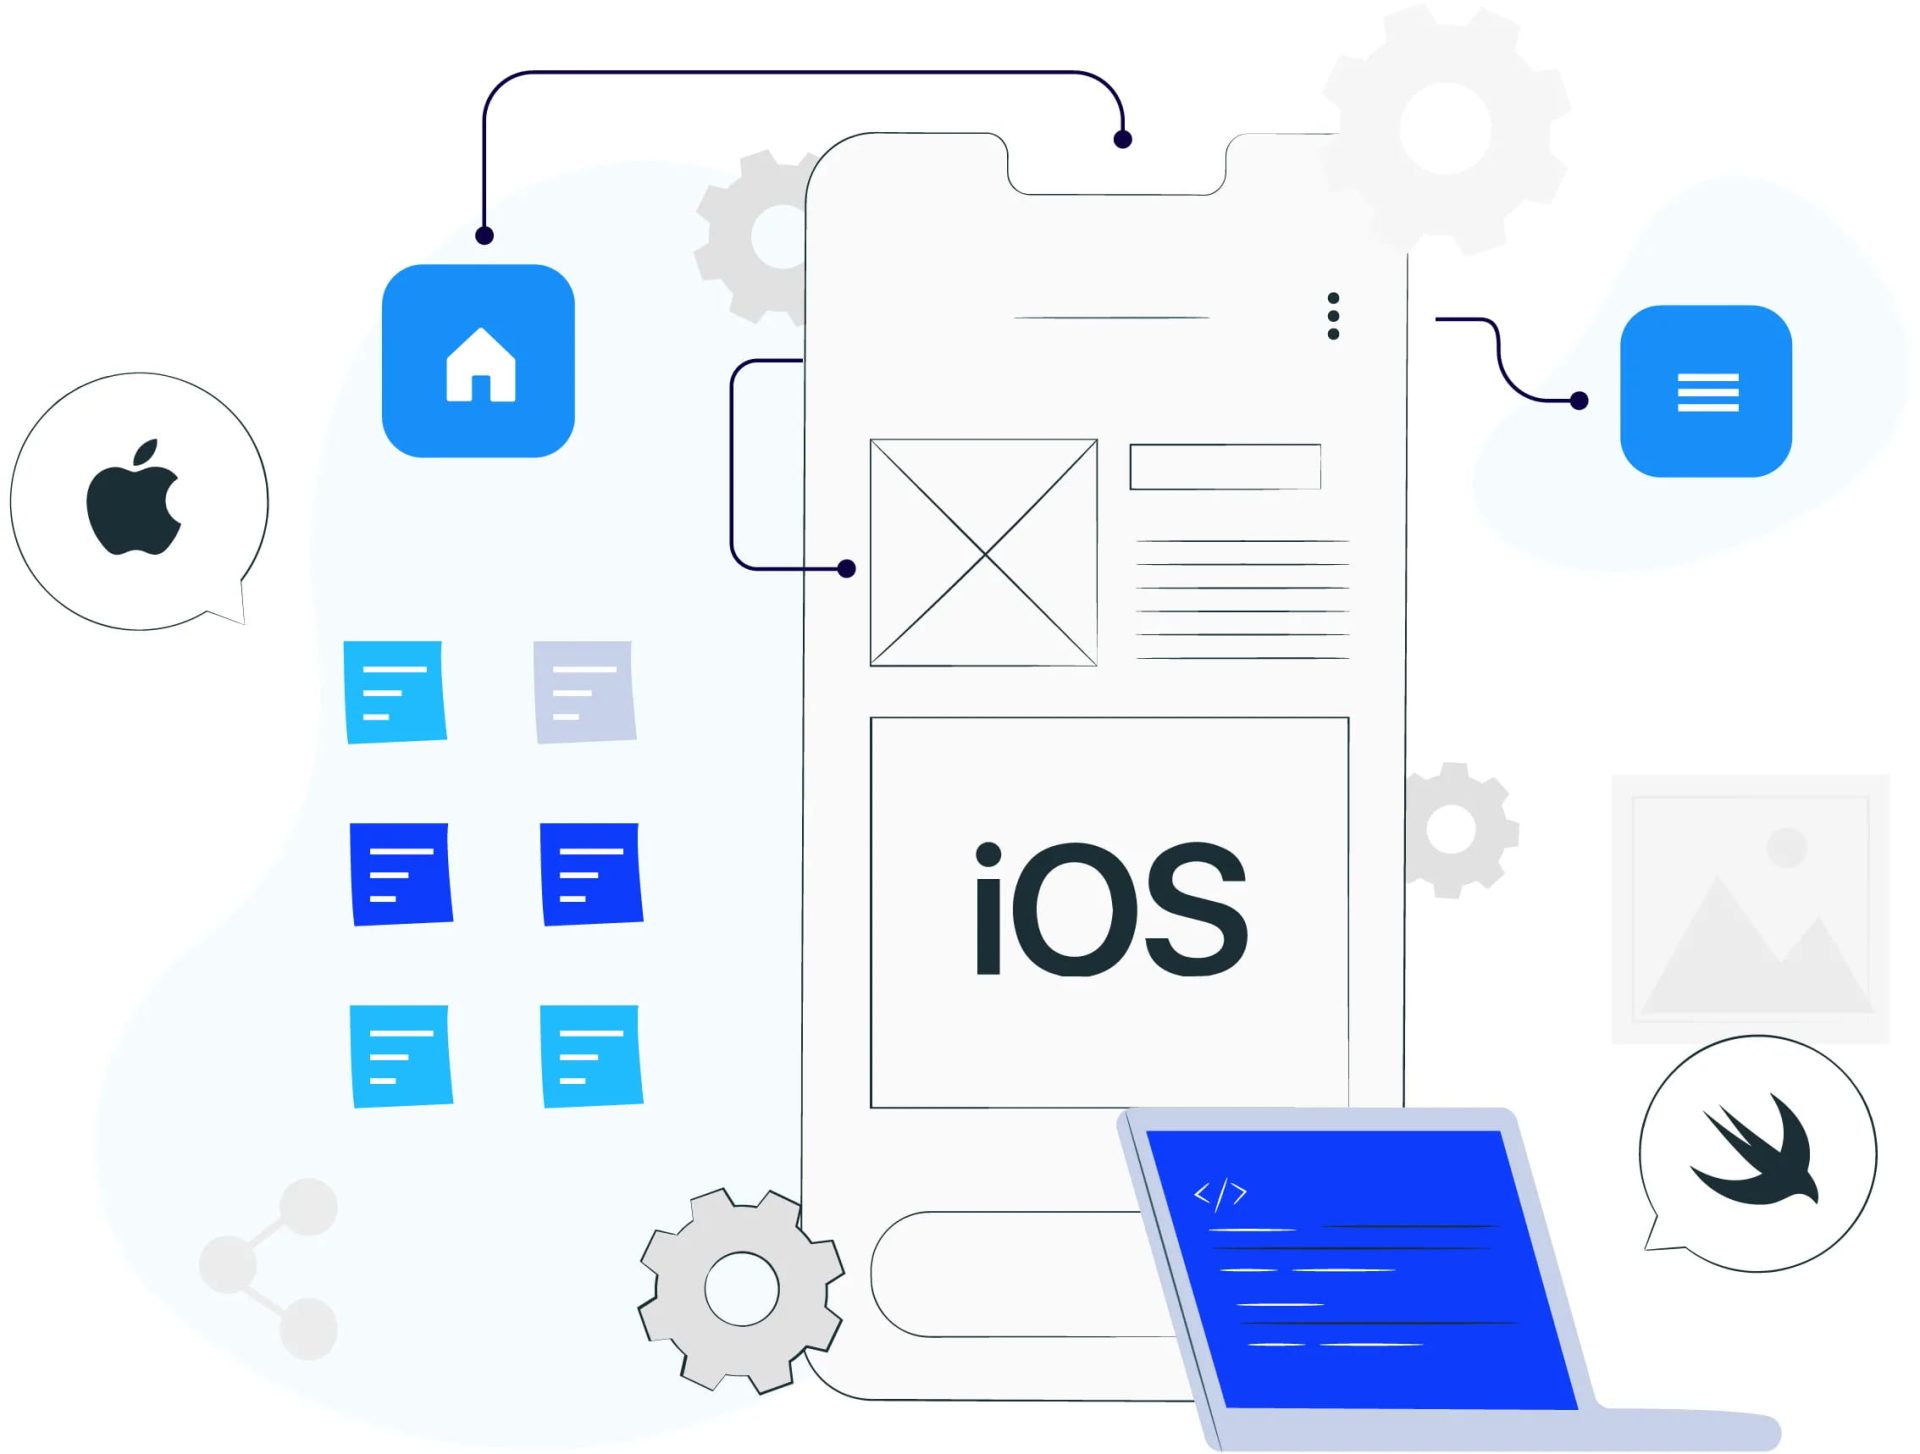 Mobile app development for iOS platform